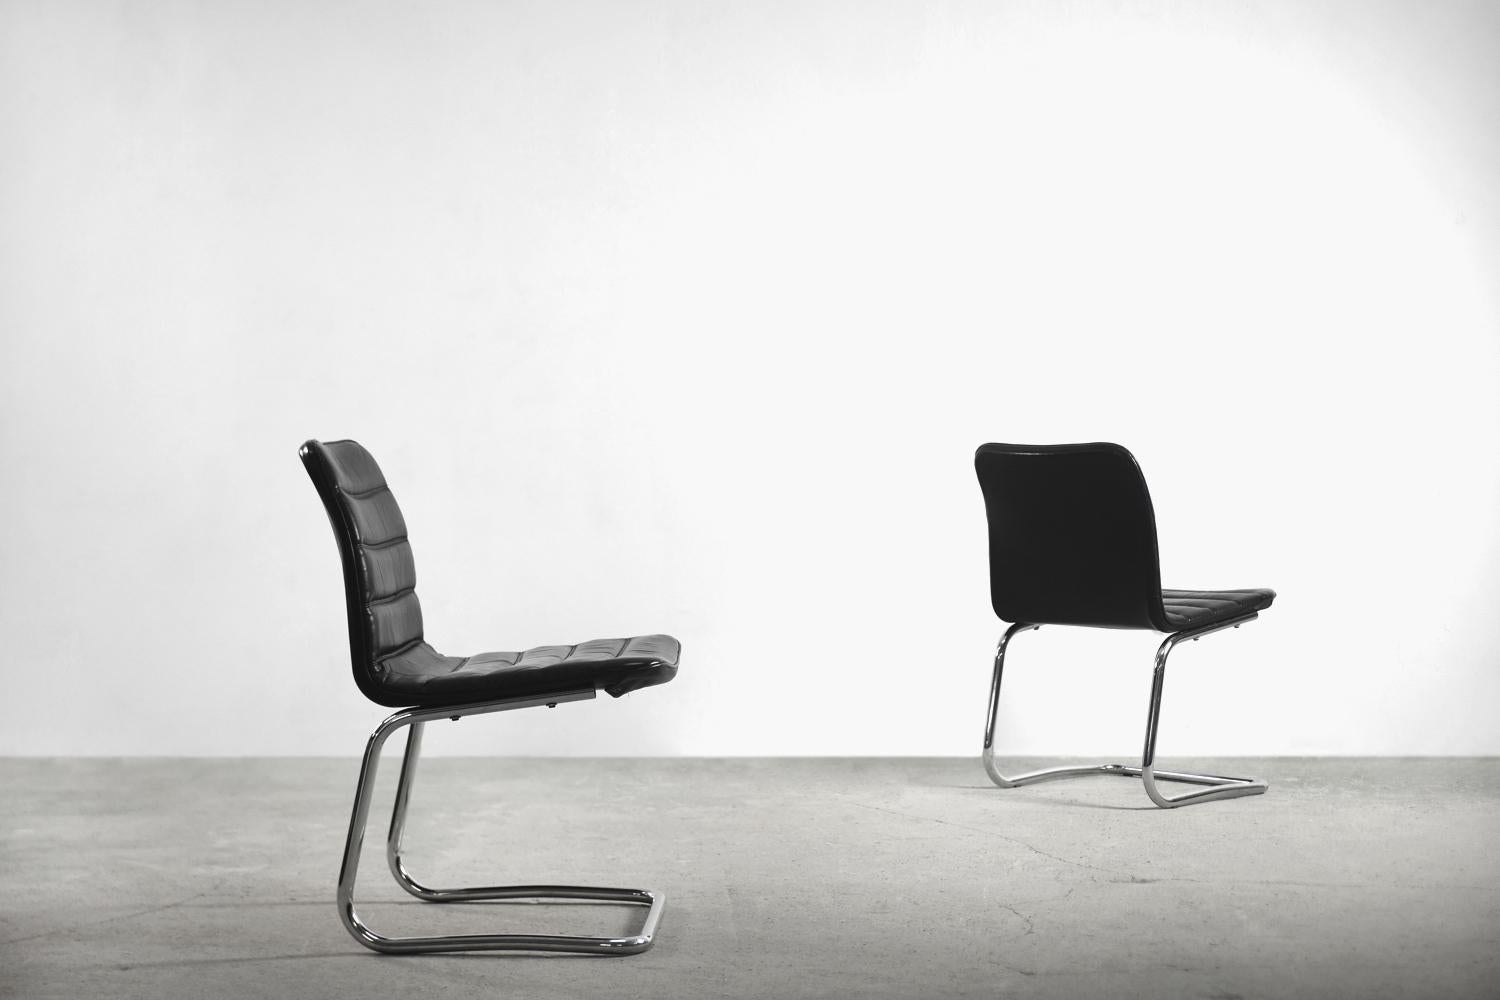 Dieses Set aus zwei minimalistischen Stühlen wurde in den 1960er Jahren in Deutschland von Pol International hergestellt. Die Sturzsitze waren mit schwarzem Leder mit länglichen Nähten gepolstert. Der minimalistische Sockel ist aus verchromtem Stahl